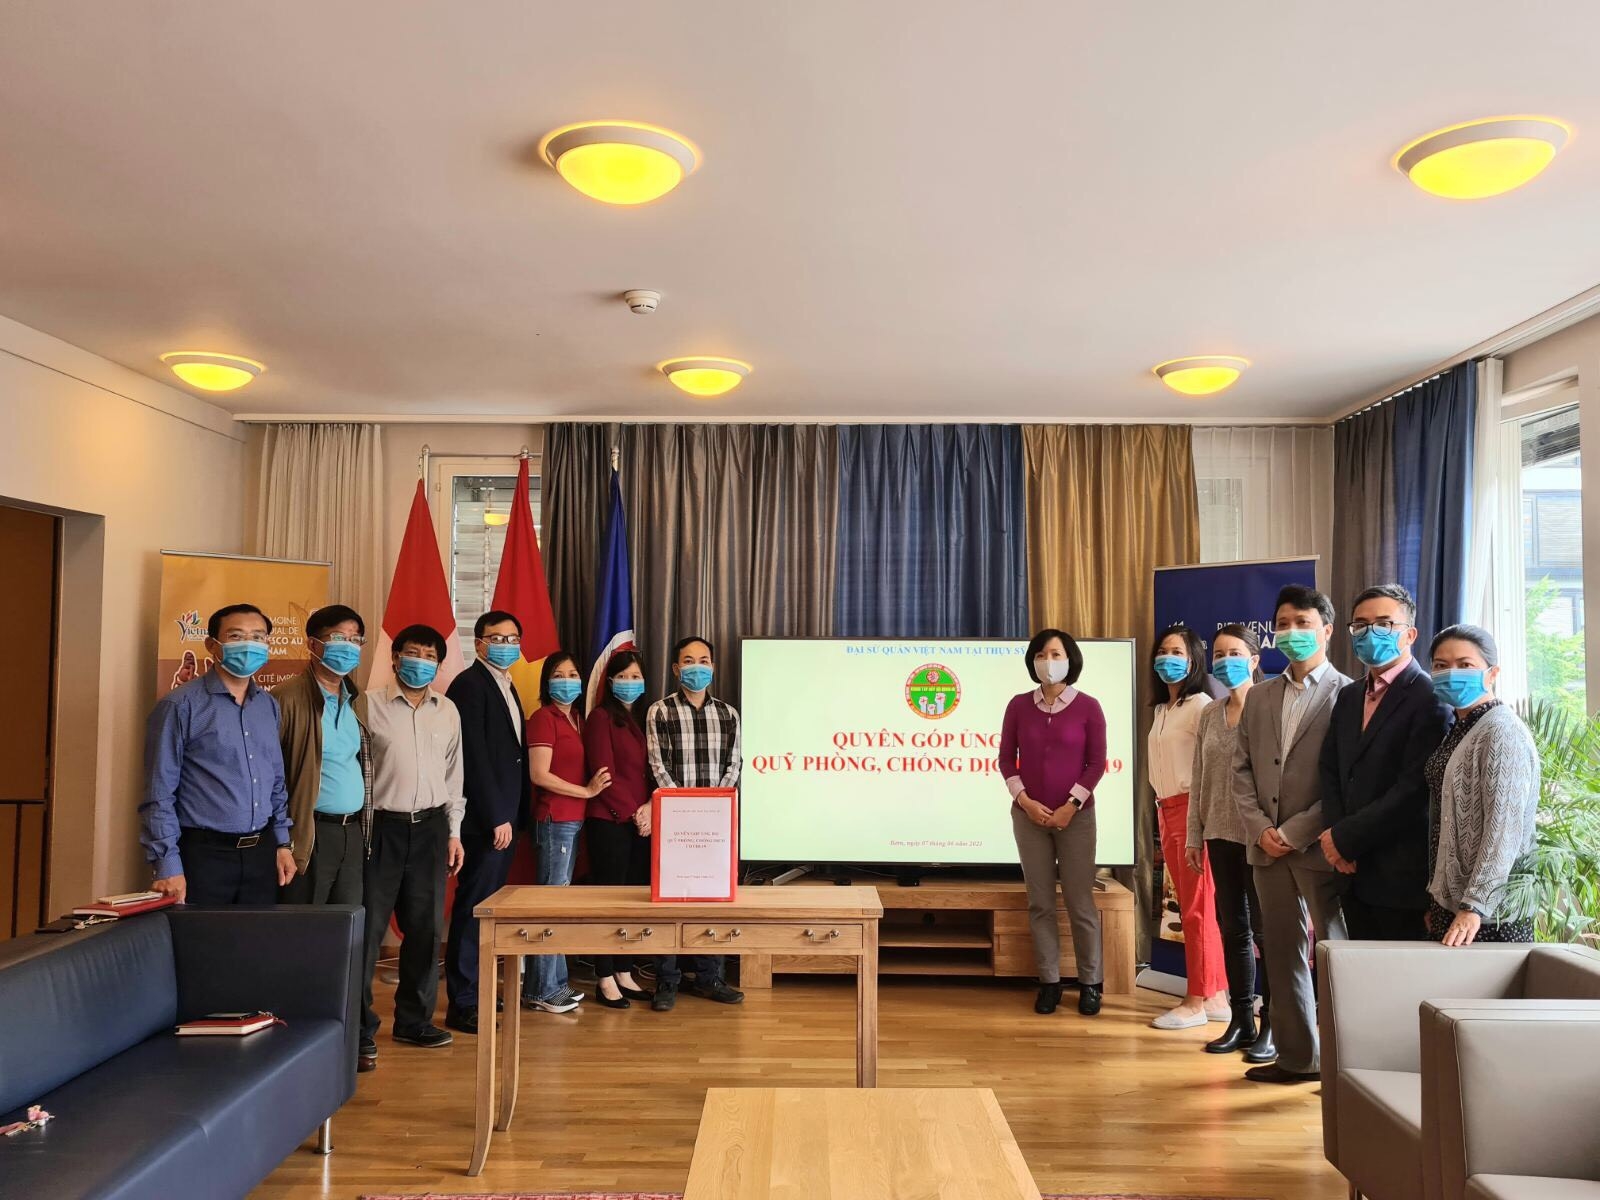 Đại sứ quán Việt Nam tại Thụy Sỹ đã tổ chức lễ quyên góp ủng hộ Quỹ phòng, chống dịch Covid-19